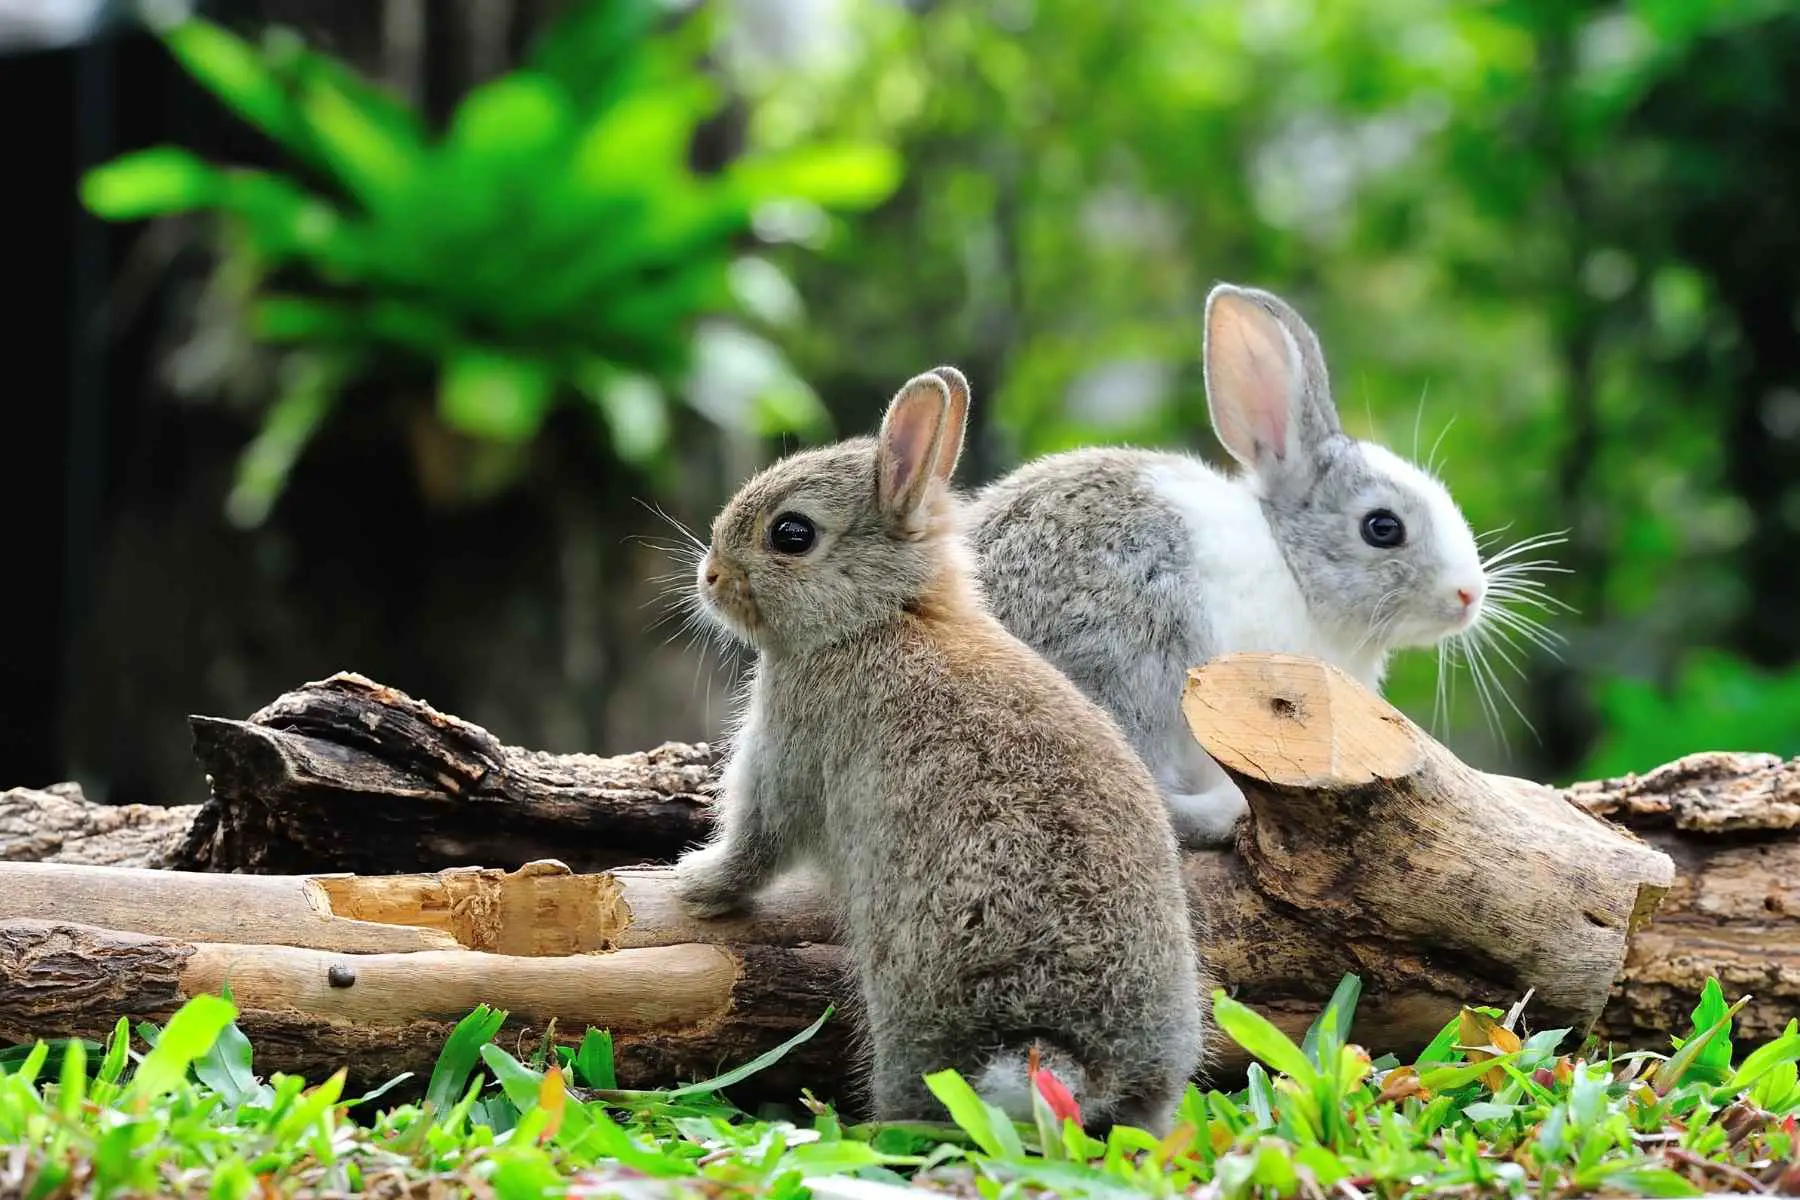 Äter kaniner insekter?